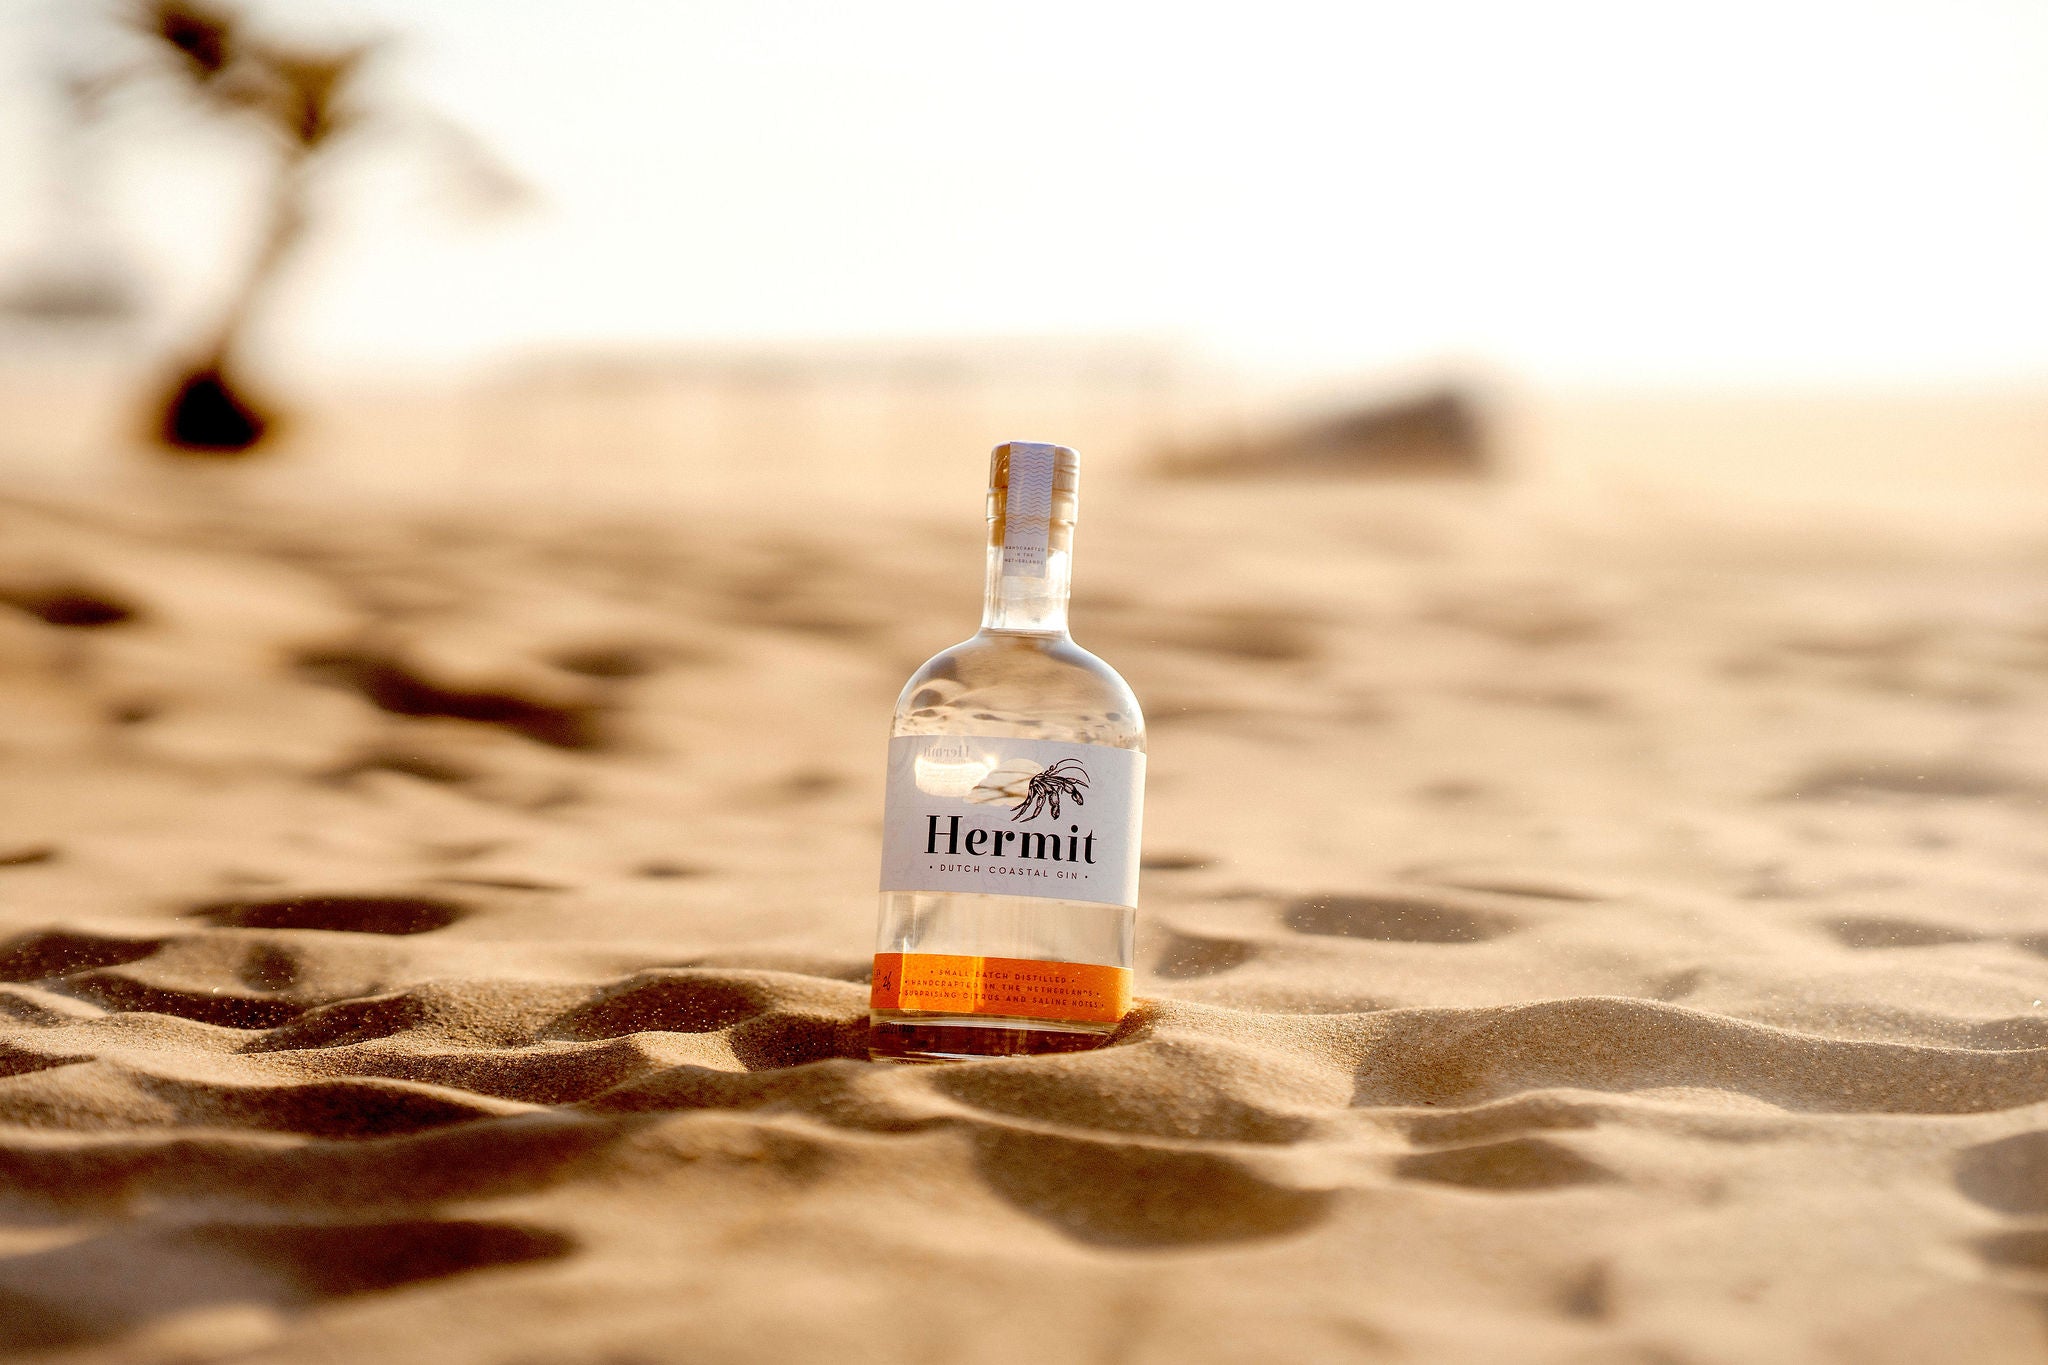 Hermit bottle beach